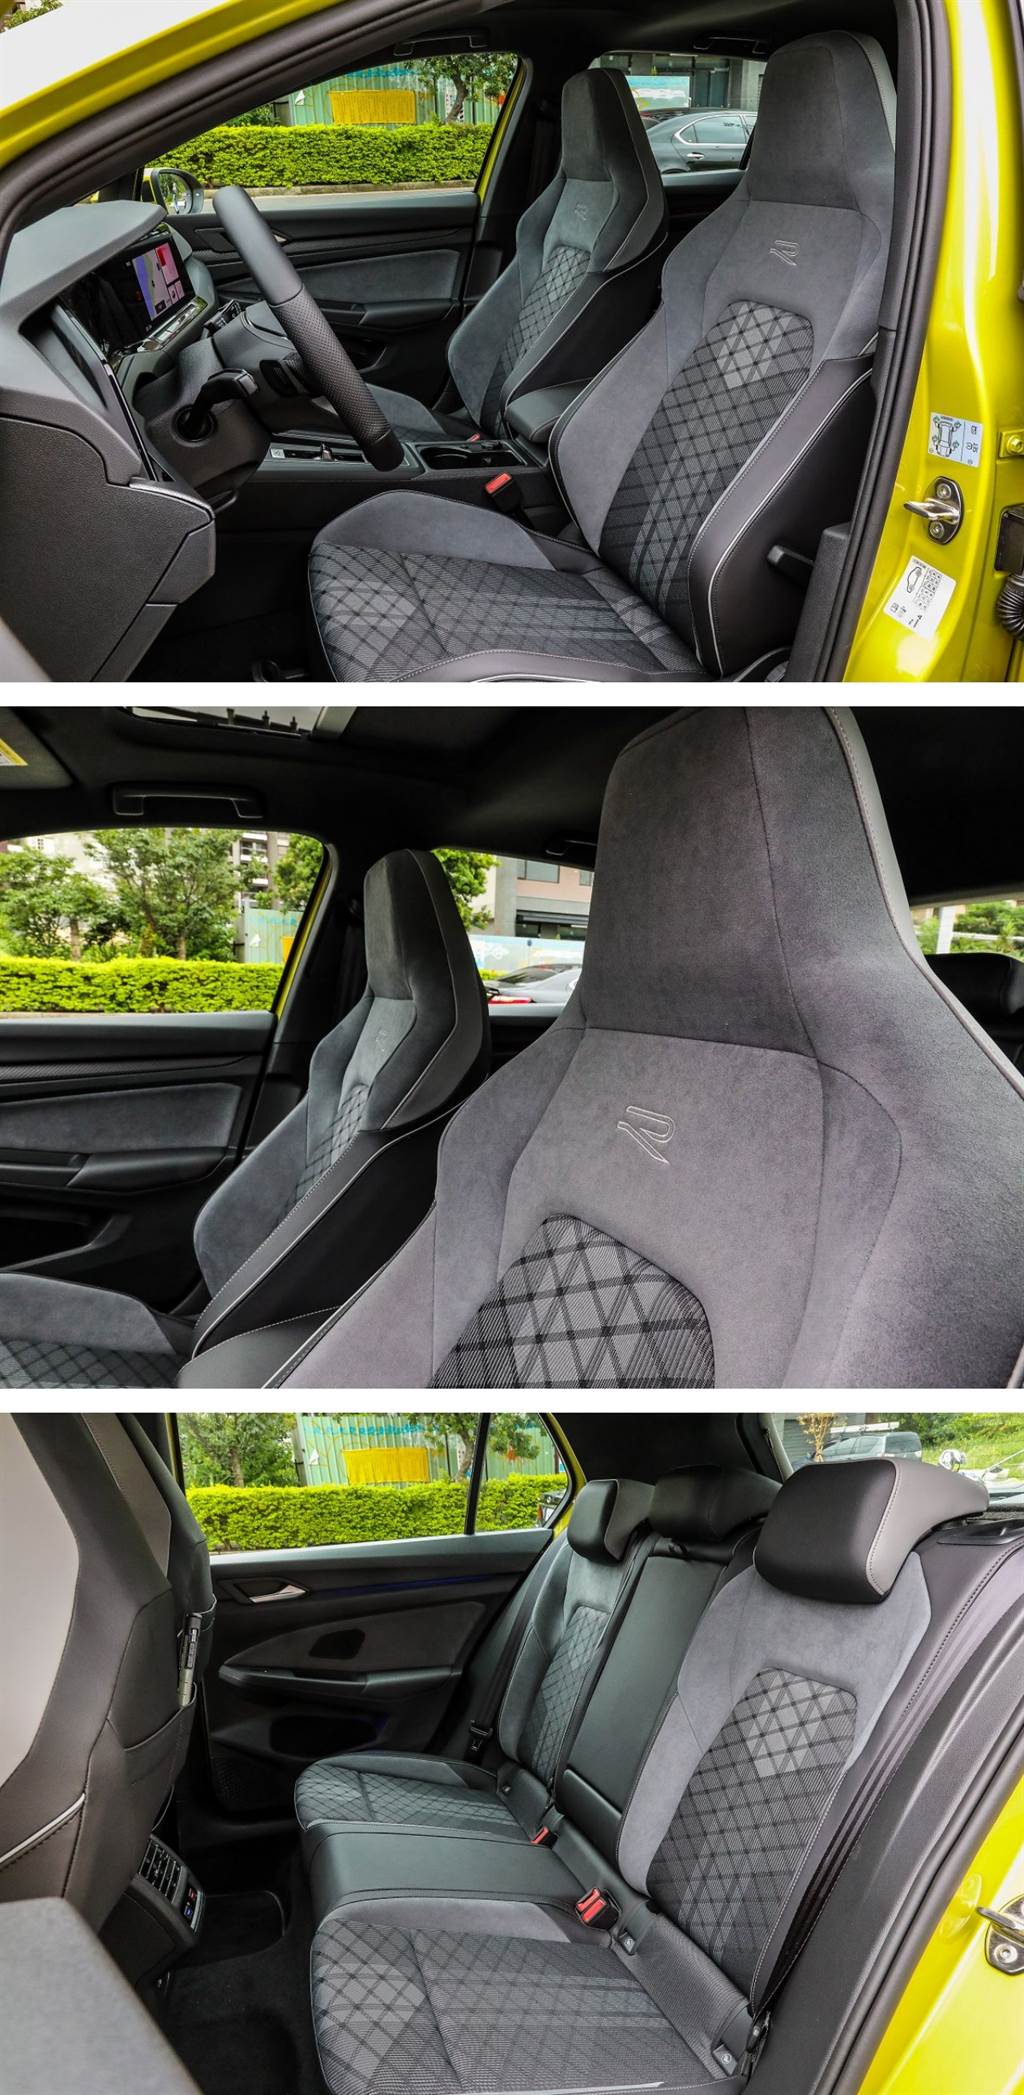 上方的圖片是此次試車所配置的前座椅背較厚的類麂皮/織布跑車型座椅，因為是R-Line車型，還在座椅上端有著R字樣的繡字，乘坐質感優異。